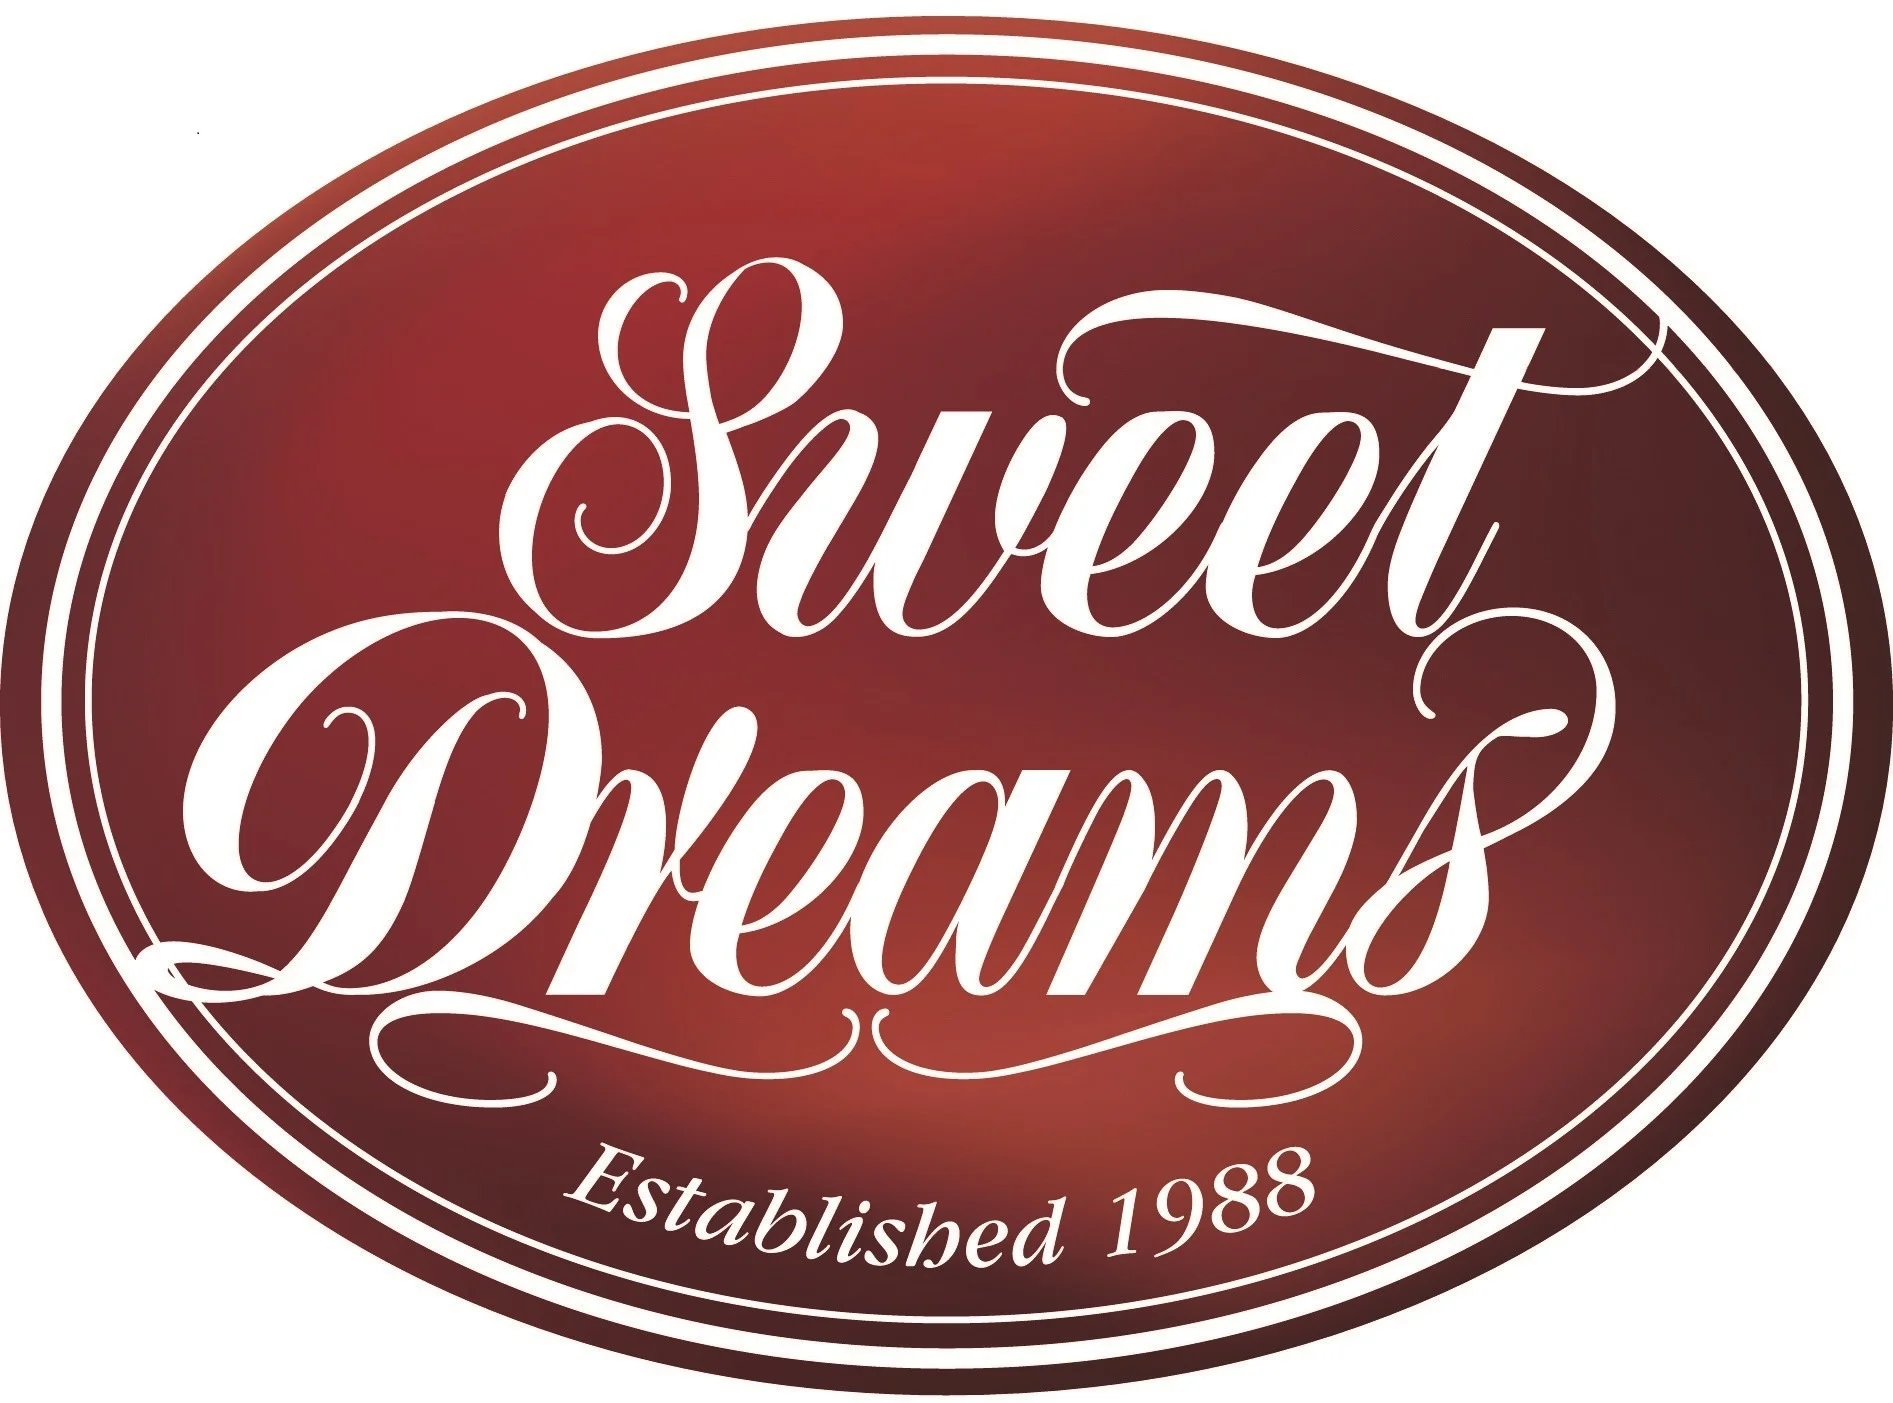 Sweet Dreams (Nelson) Ltd